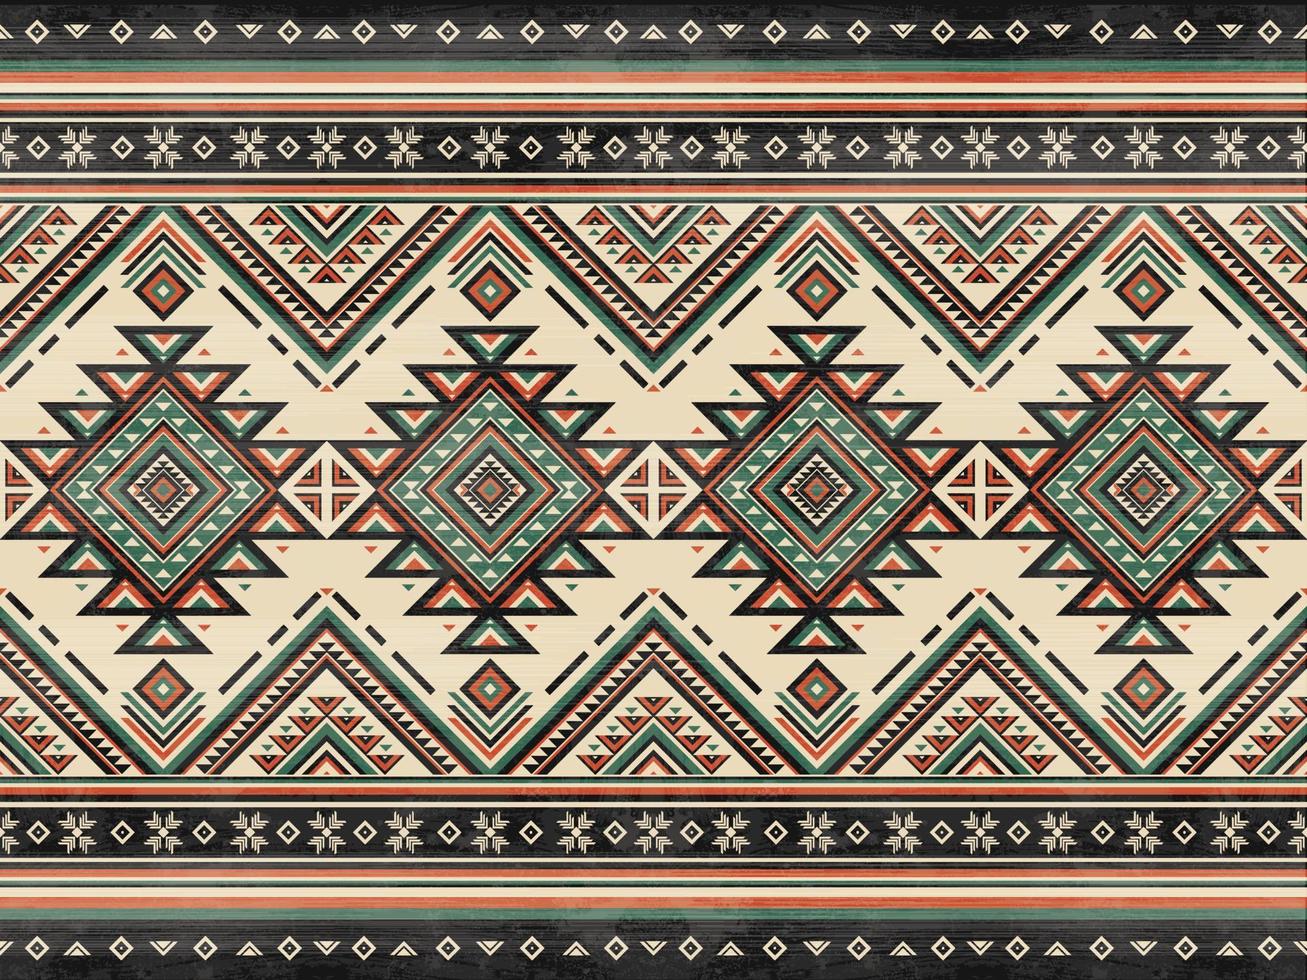 padrão nativo americano padrão de ornamento indiano geométrico étnico textura têxtil padrão asteca tribal navajo tecido mexicano decoração vetorial sem costura vetor